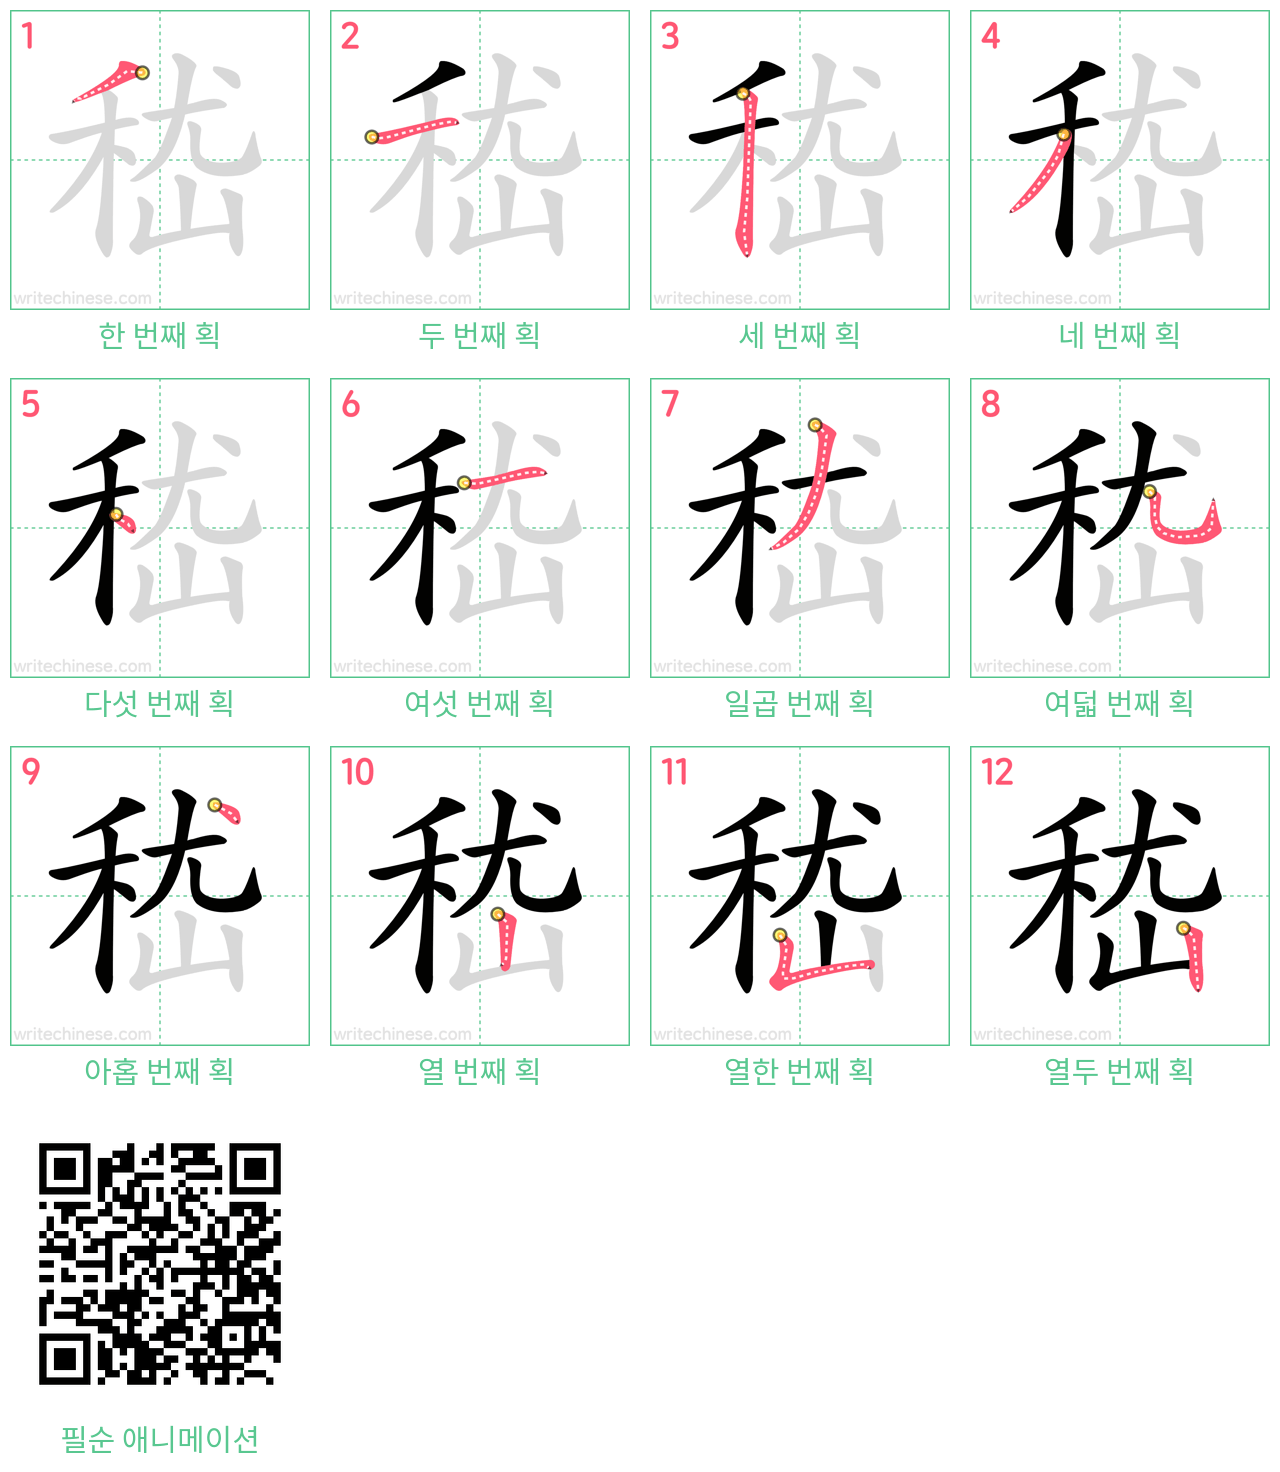 嵇 step-by-step stroke order diagrams